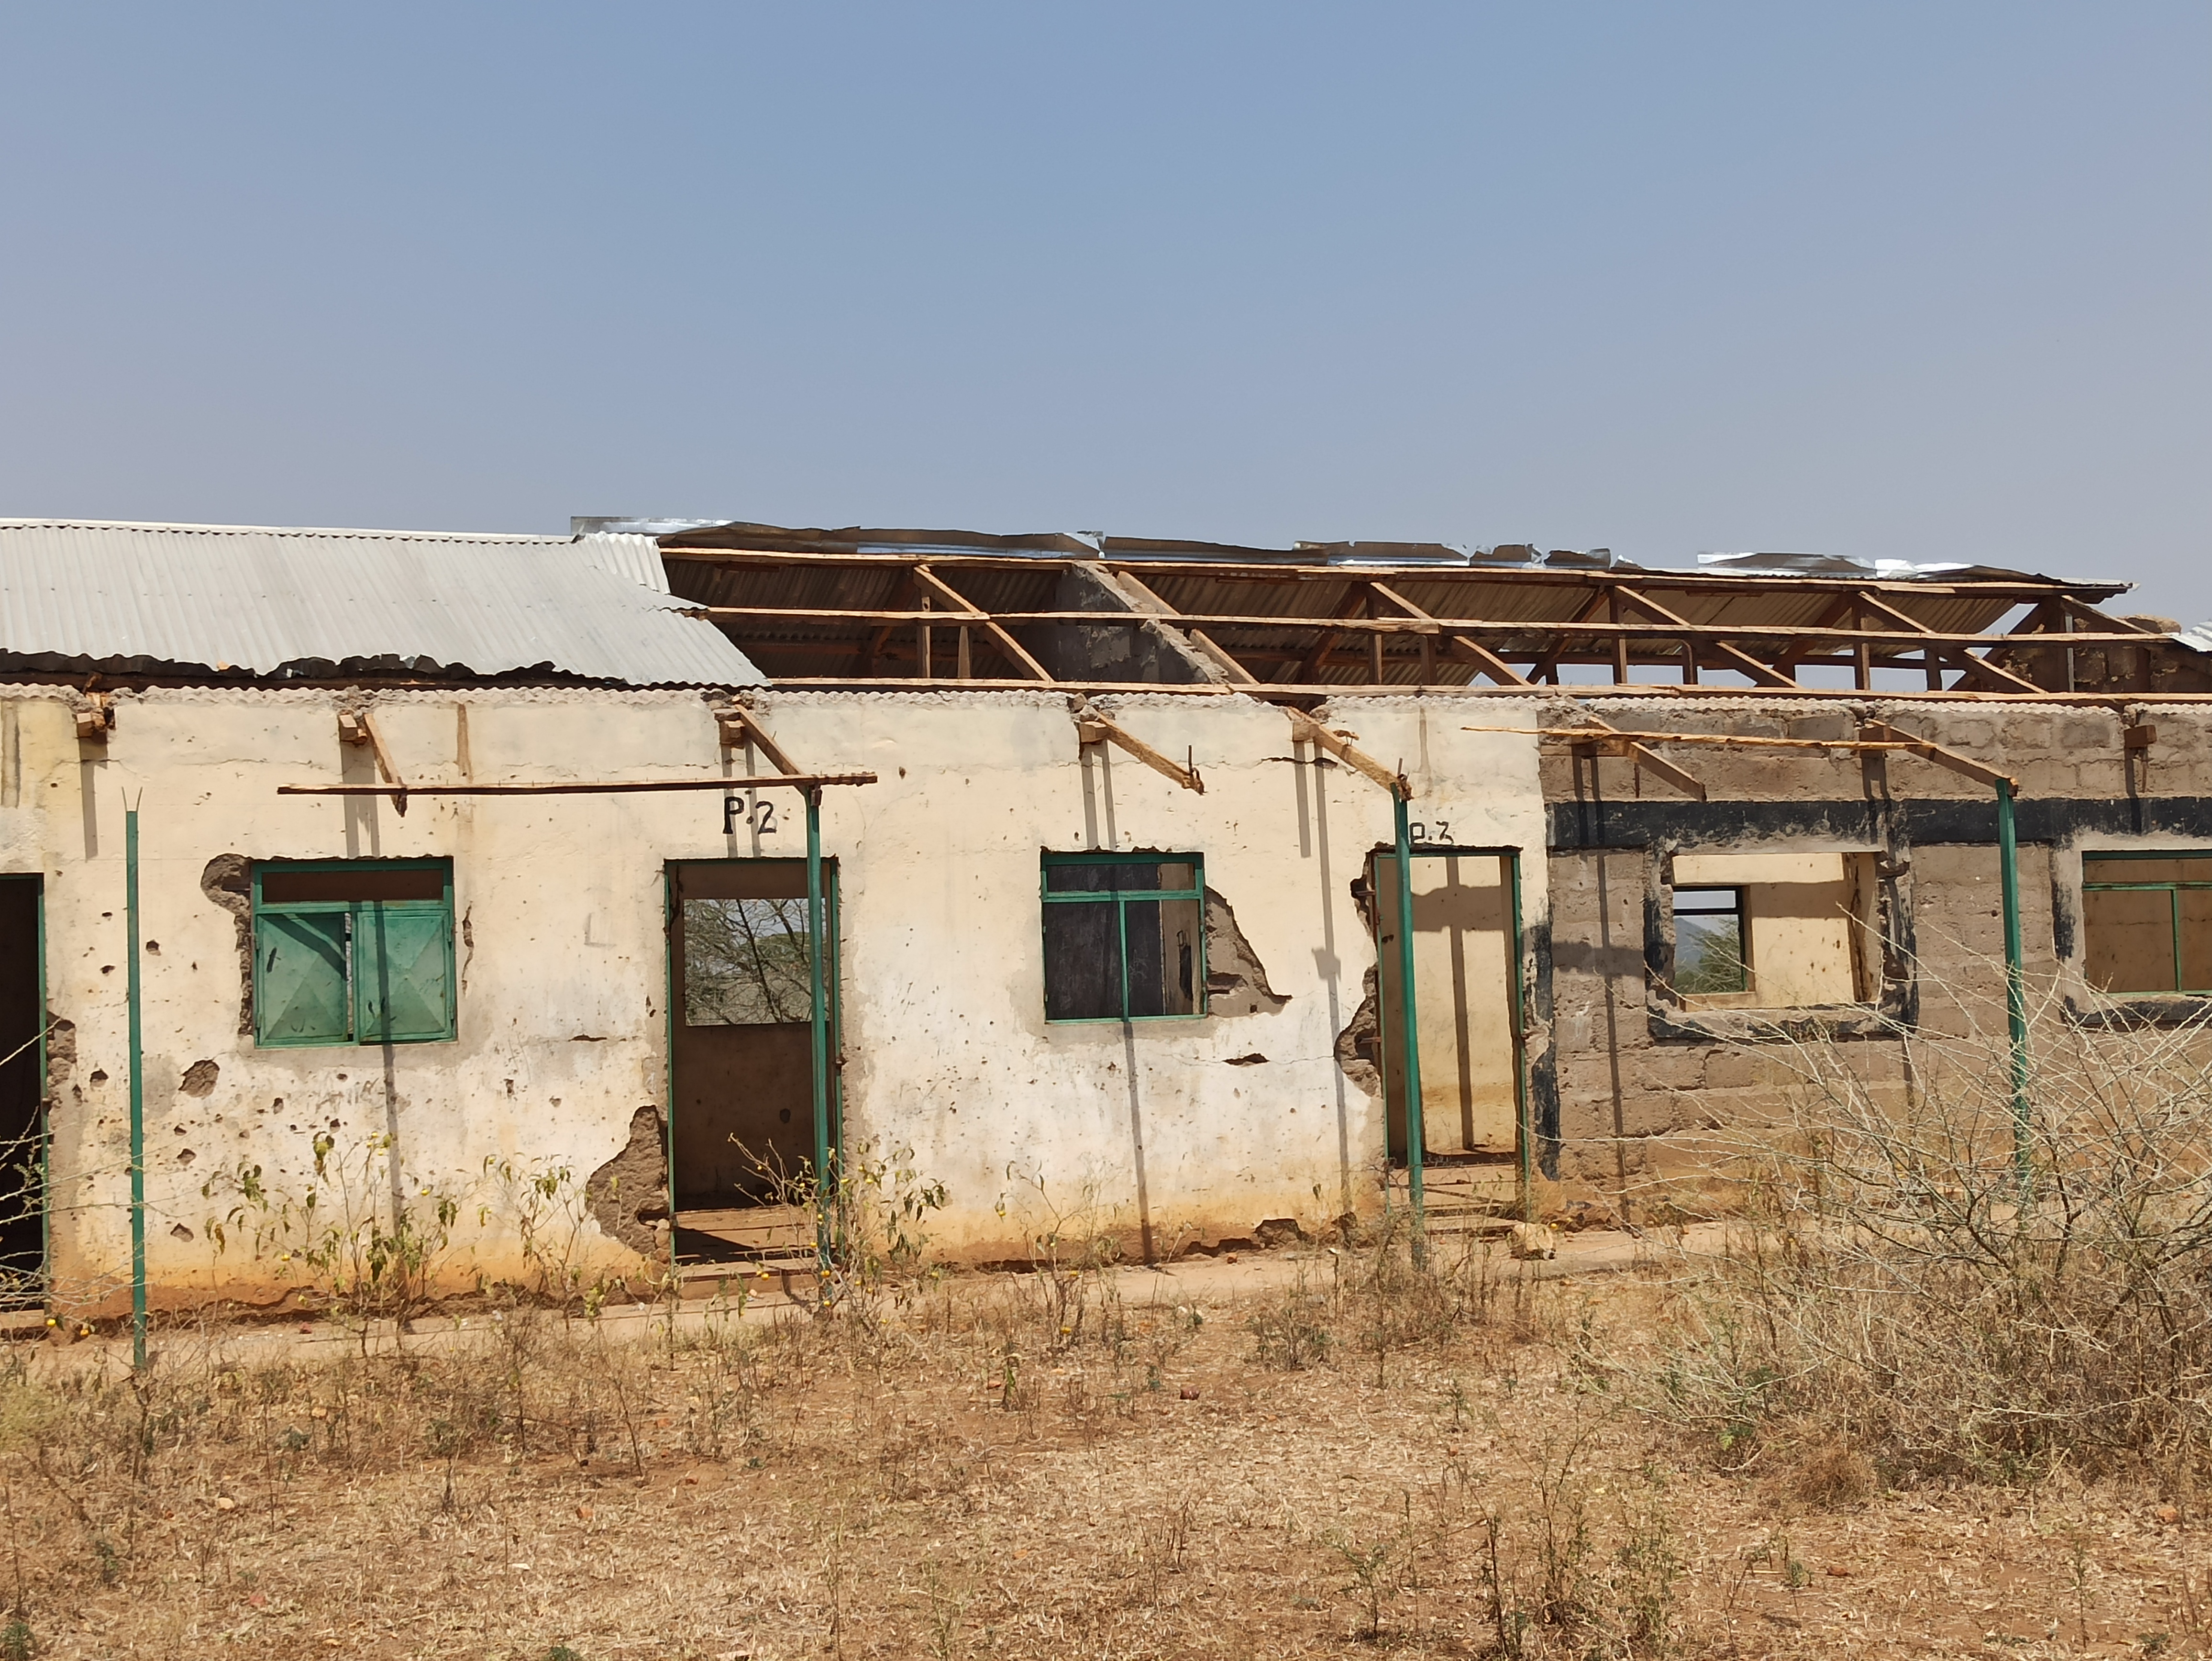 The abandoned schools of Kapoeta